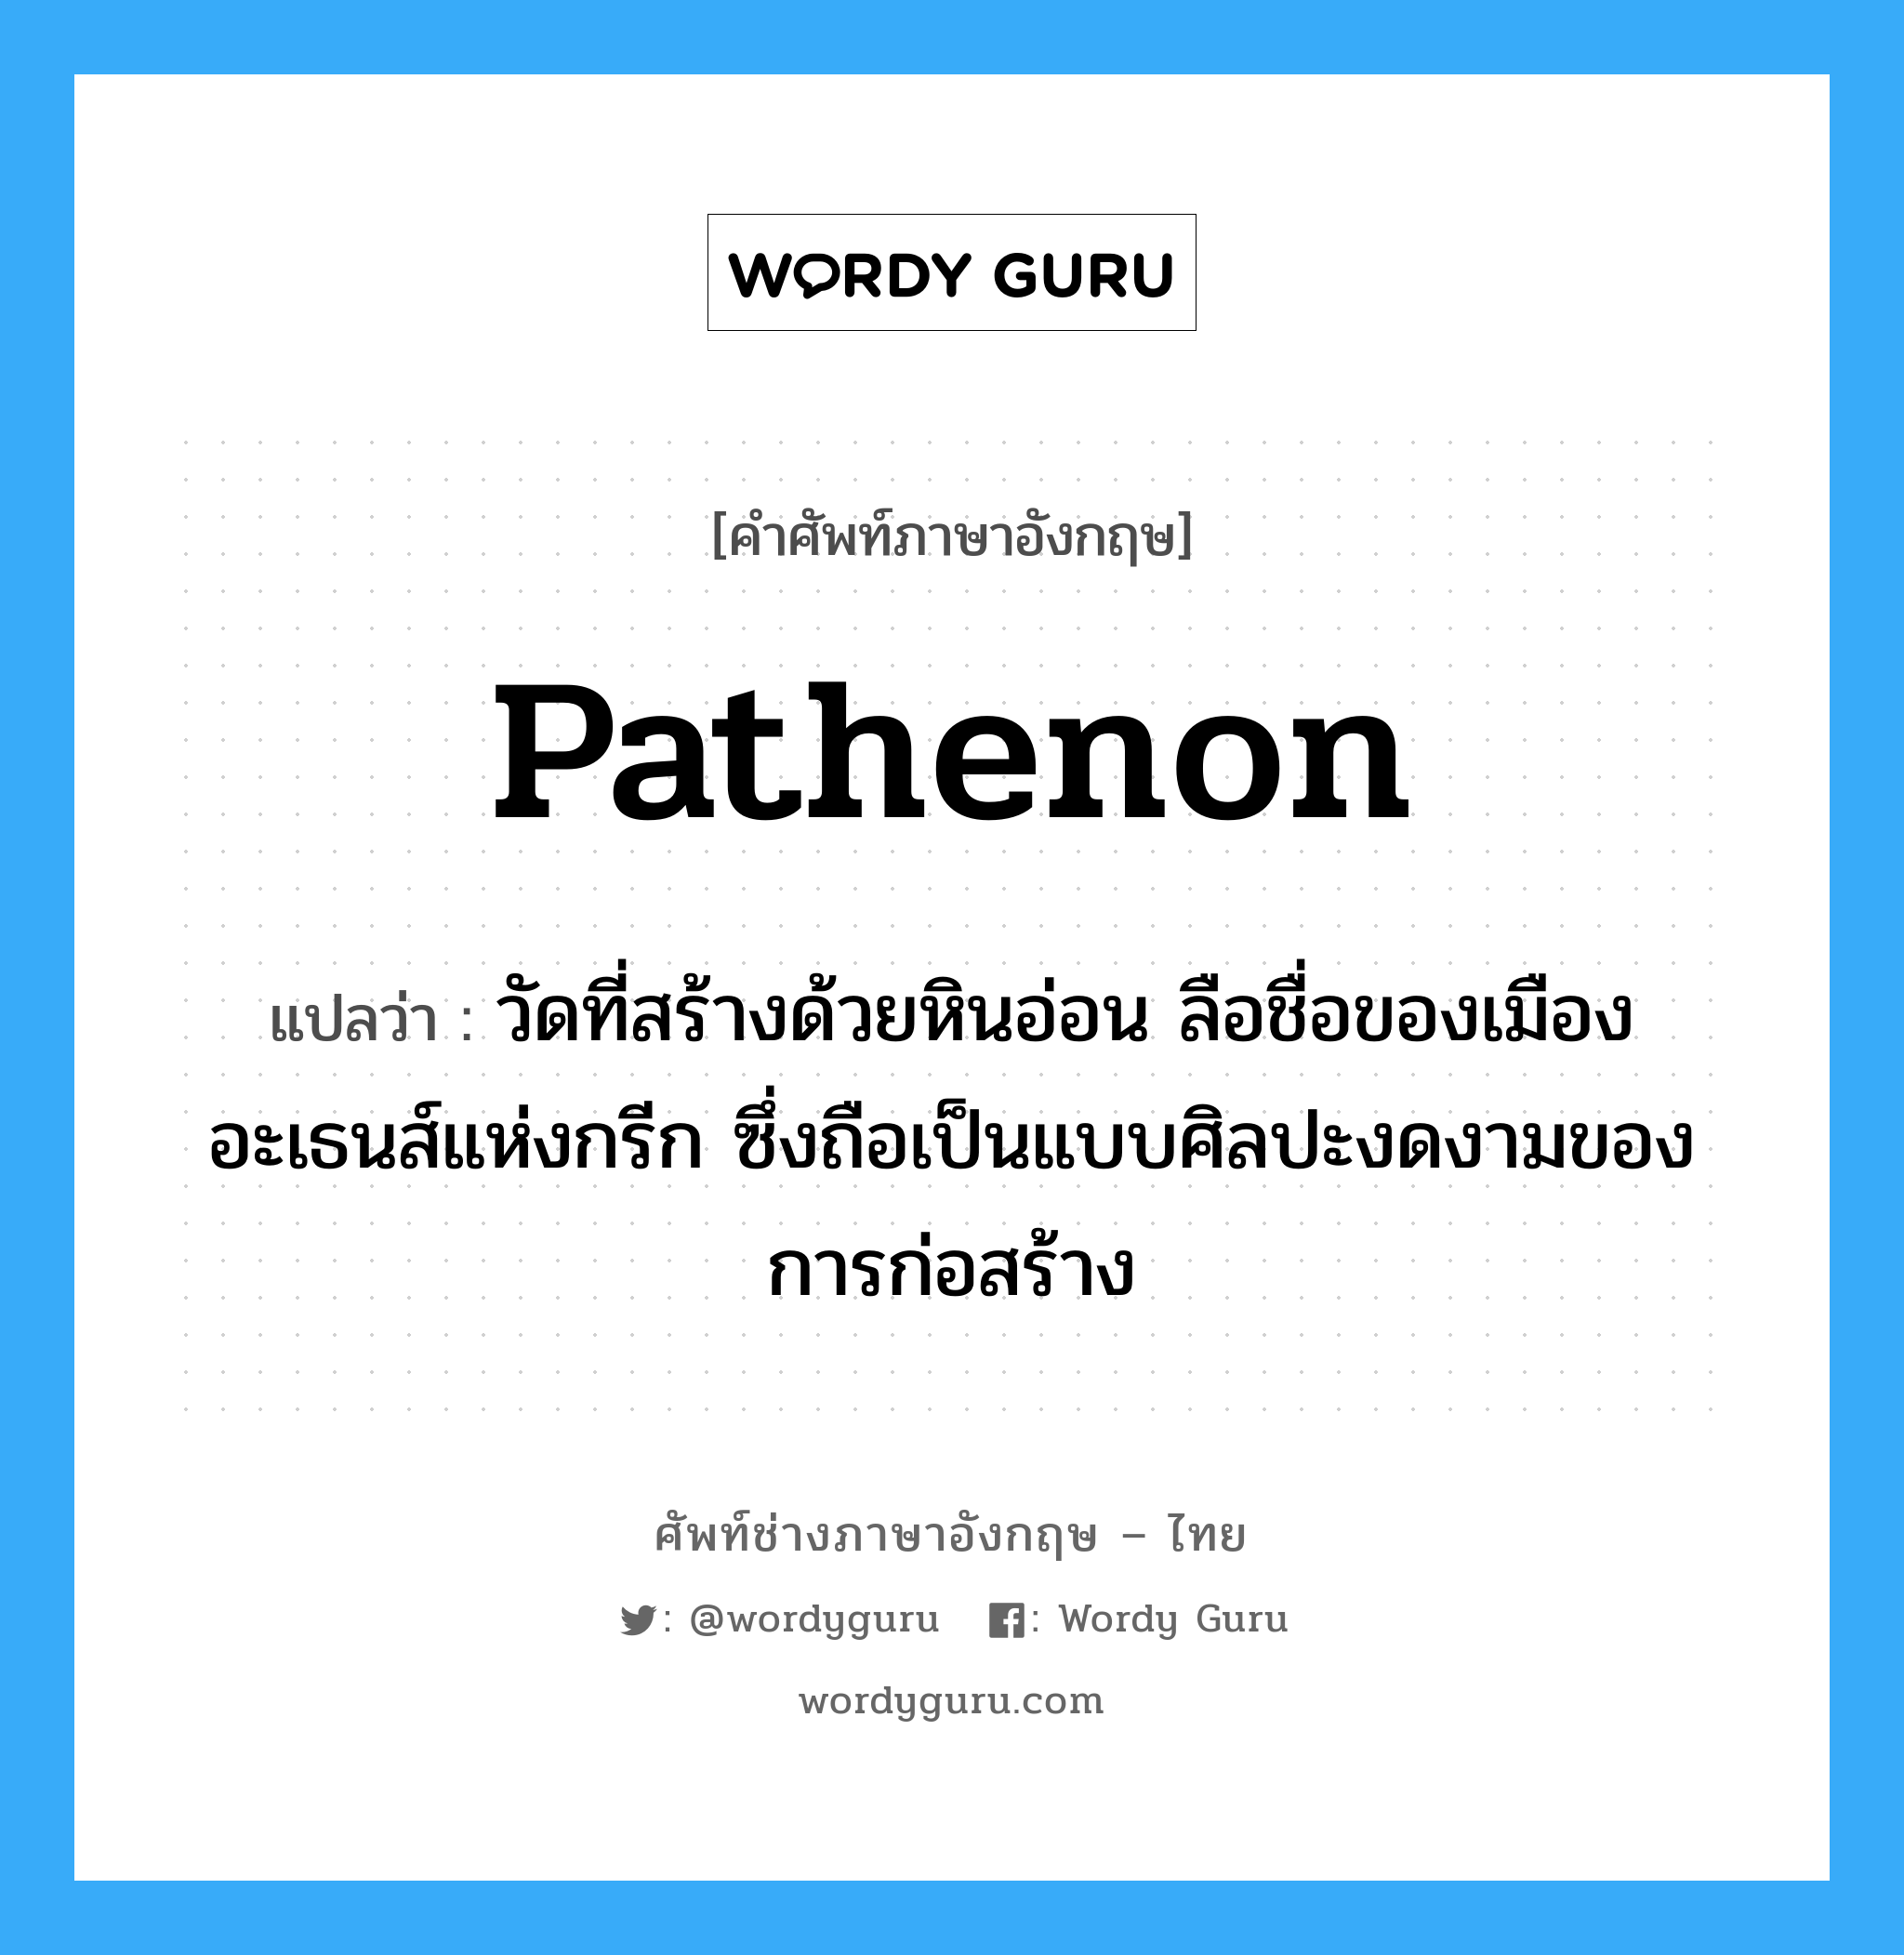 Pathenon แปลว่า?, คำศัพท์ช่างภาษาอังกฤษ - ไทย Pathenon คำศัพท์ภาษาอังกฤษ Pathenon แปลว่า วัดที่สร้างด้วยหินอ่อน ลือชื่อของเมืองอะเธนส์แห่งกรีก ซึ่งถือเป็นแบบศิลปะงดงามของการก่อสร้าง